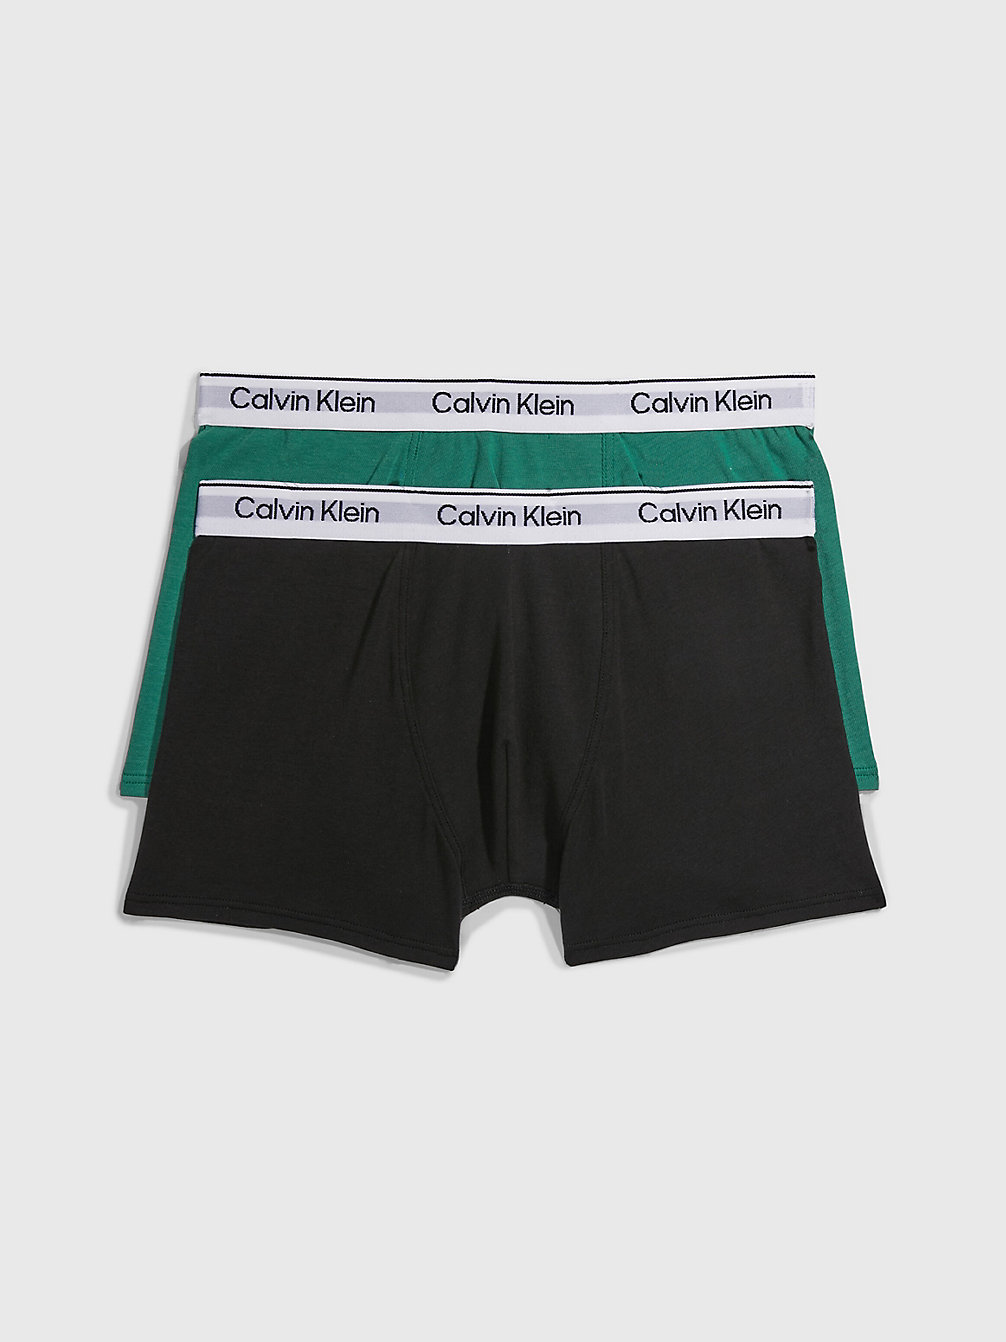 FOLIAGEGREEN/PVHBLACK 2er-Pack Boxershorts Für Jungen - Modern Cotton undefined Jungen Calvin Klein